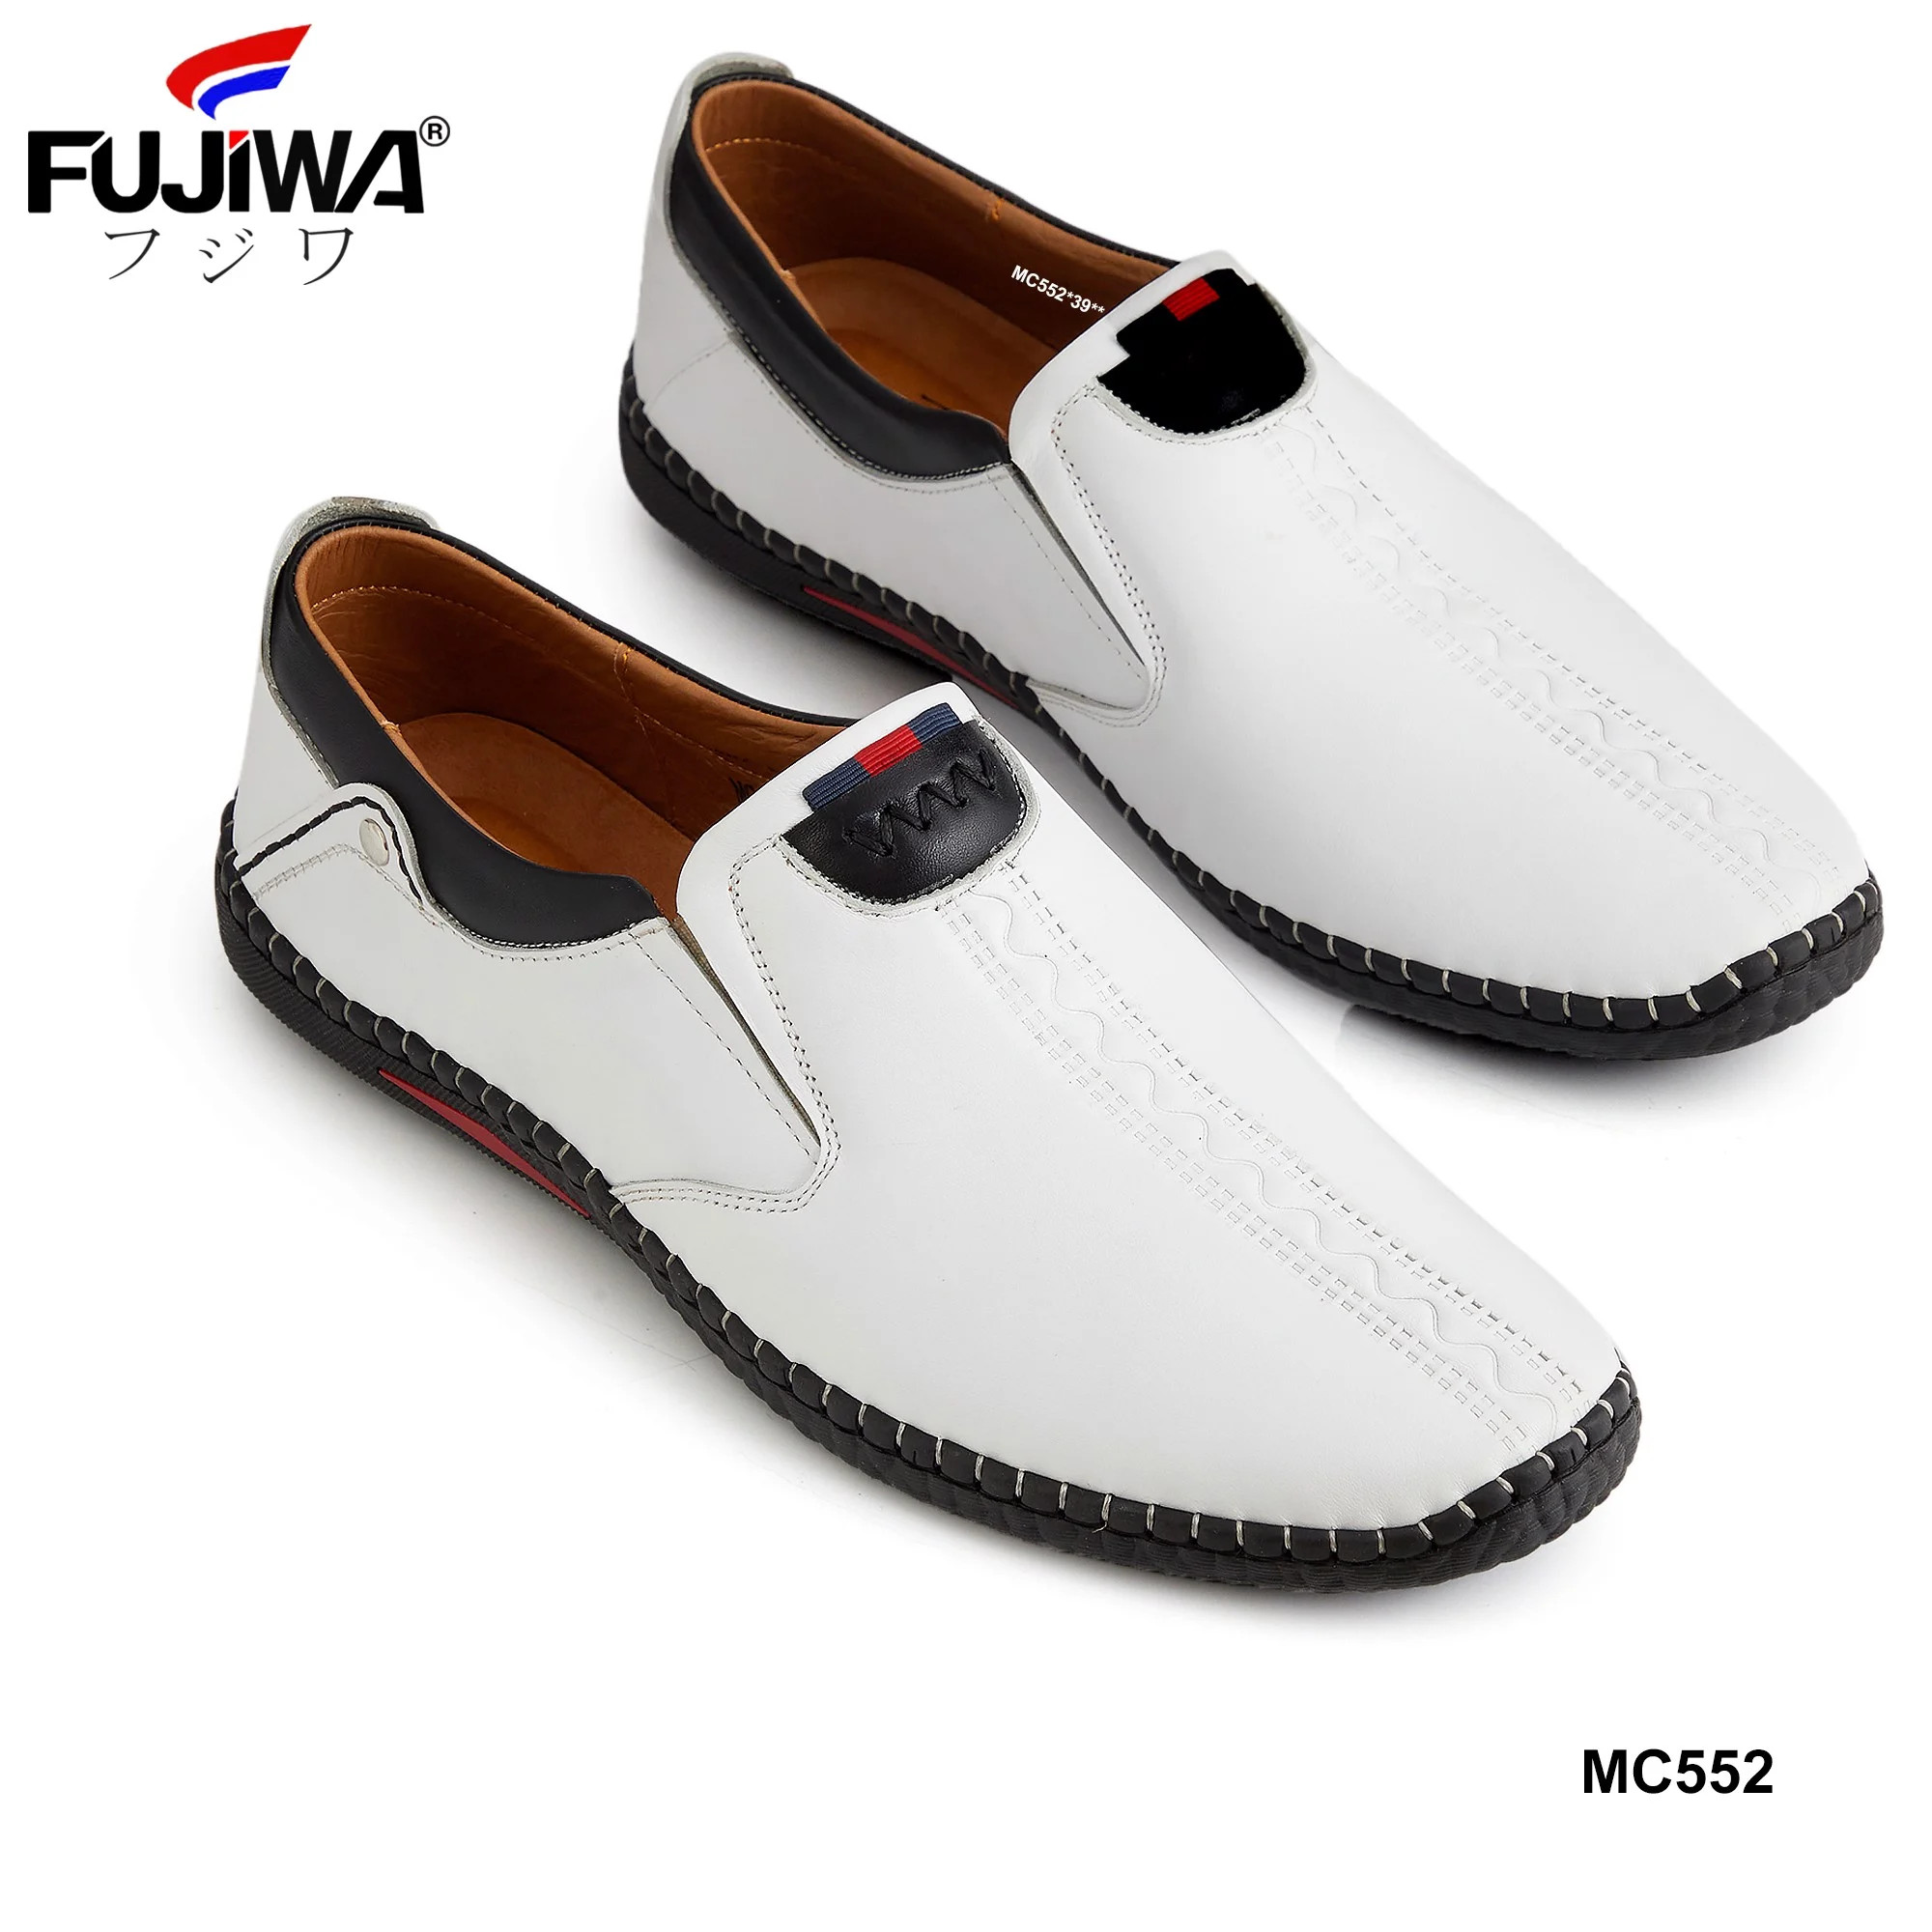 Giày Lười Giày Da Nam Cao Cấp Da Bò Fujiwa - MC552. Da bò cao cấp, đế cao su tạo độ bám tốt, bền bỉ theo thời gian